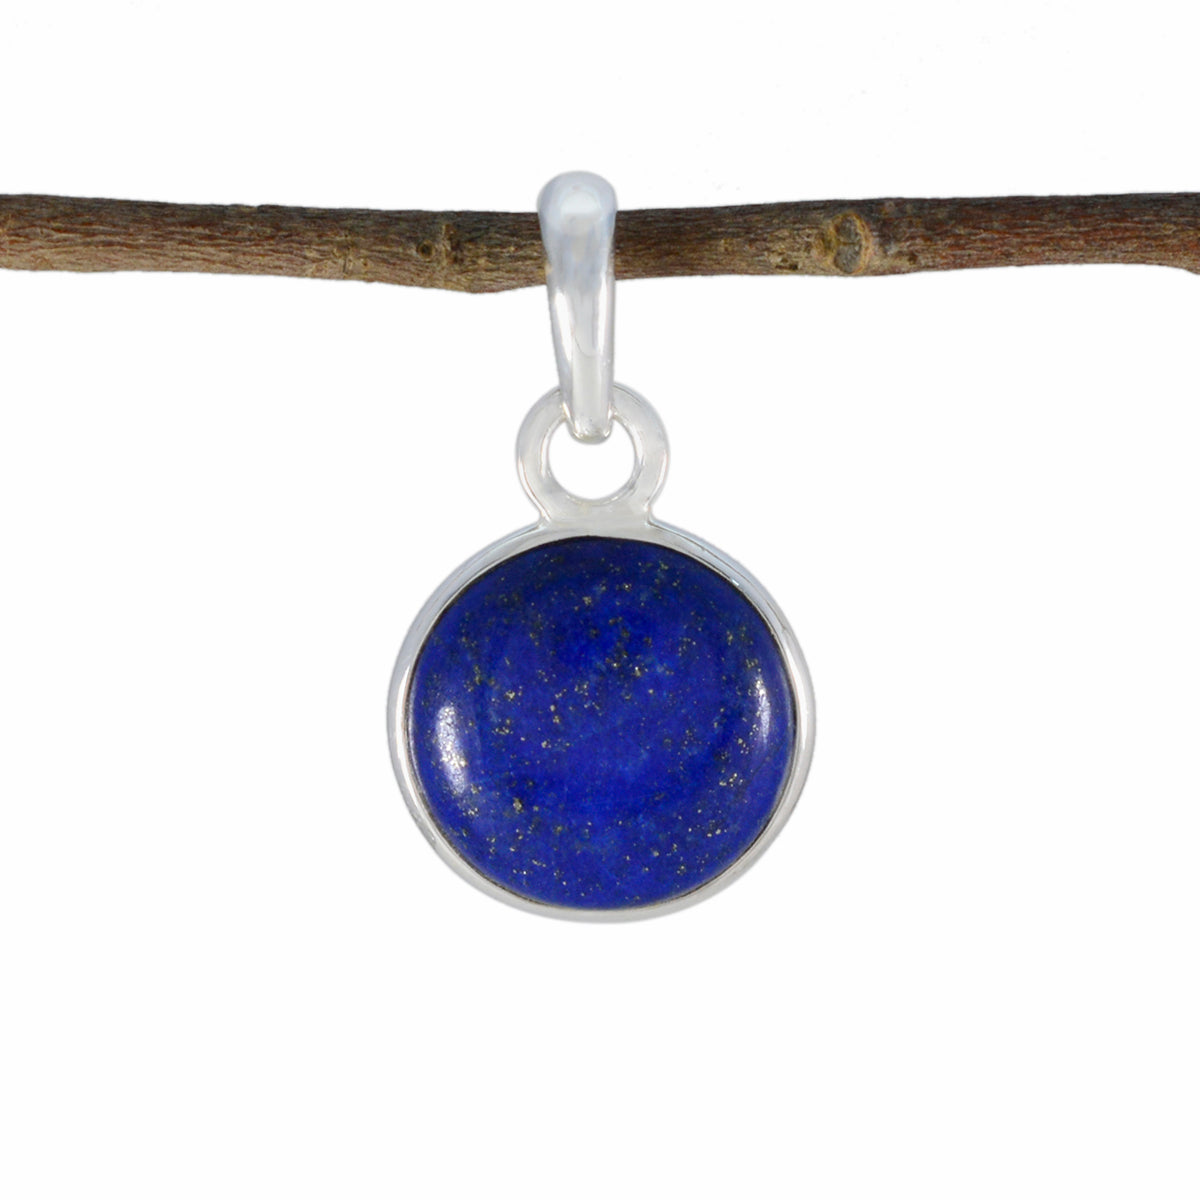 riyo эстетические драгоценные камни круглый кабошон неви-синий лазурит твердый серебряный кулон подарок на пасхальное воскресенье